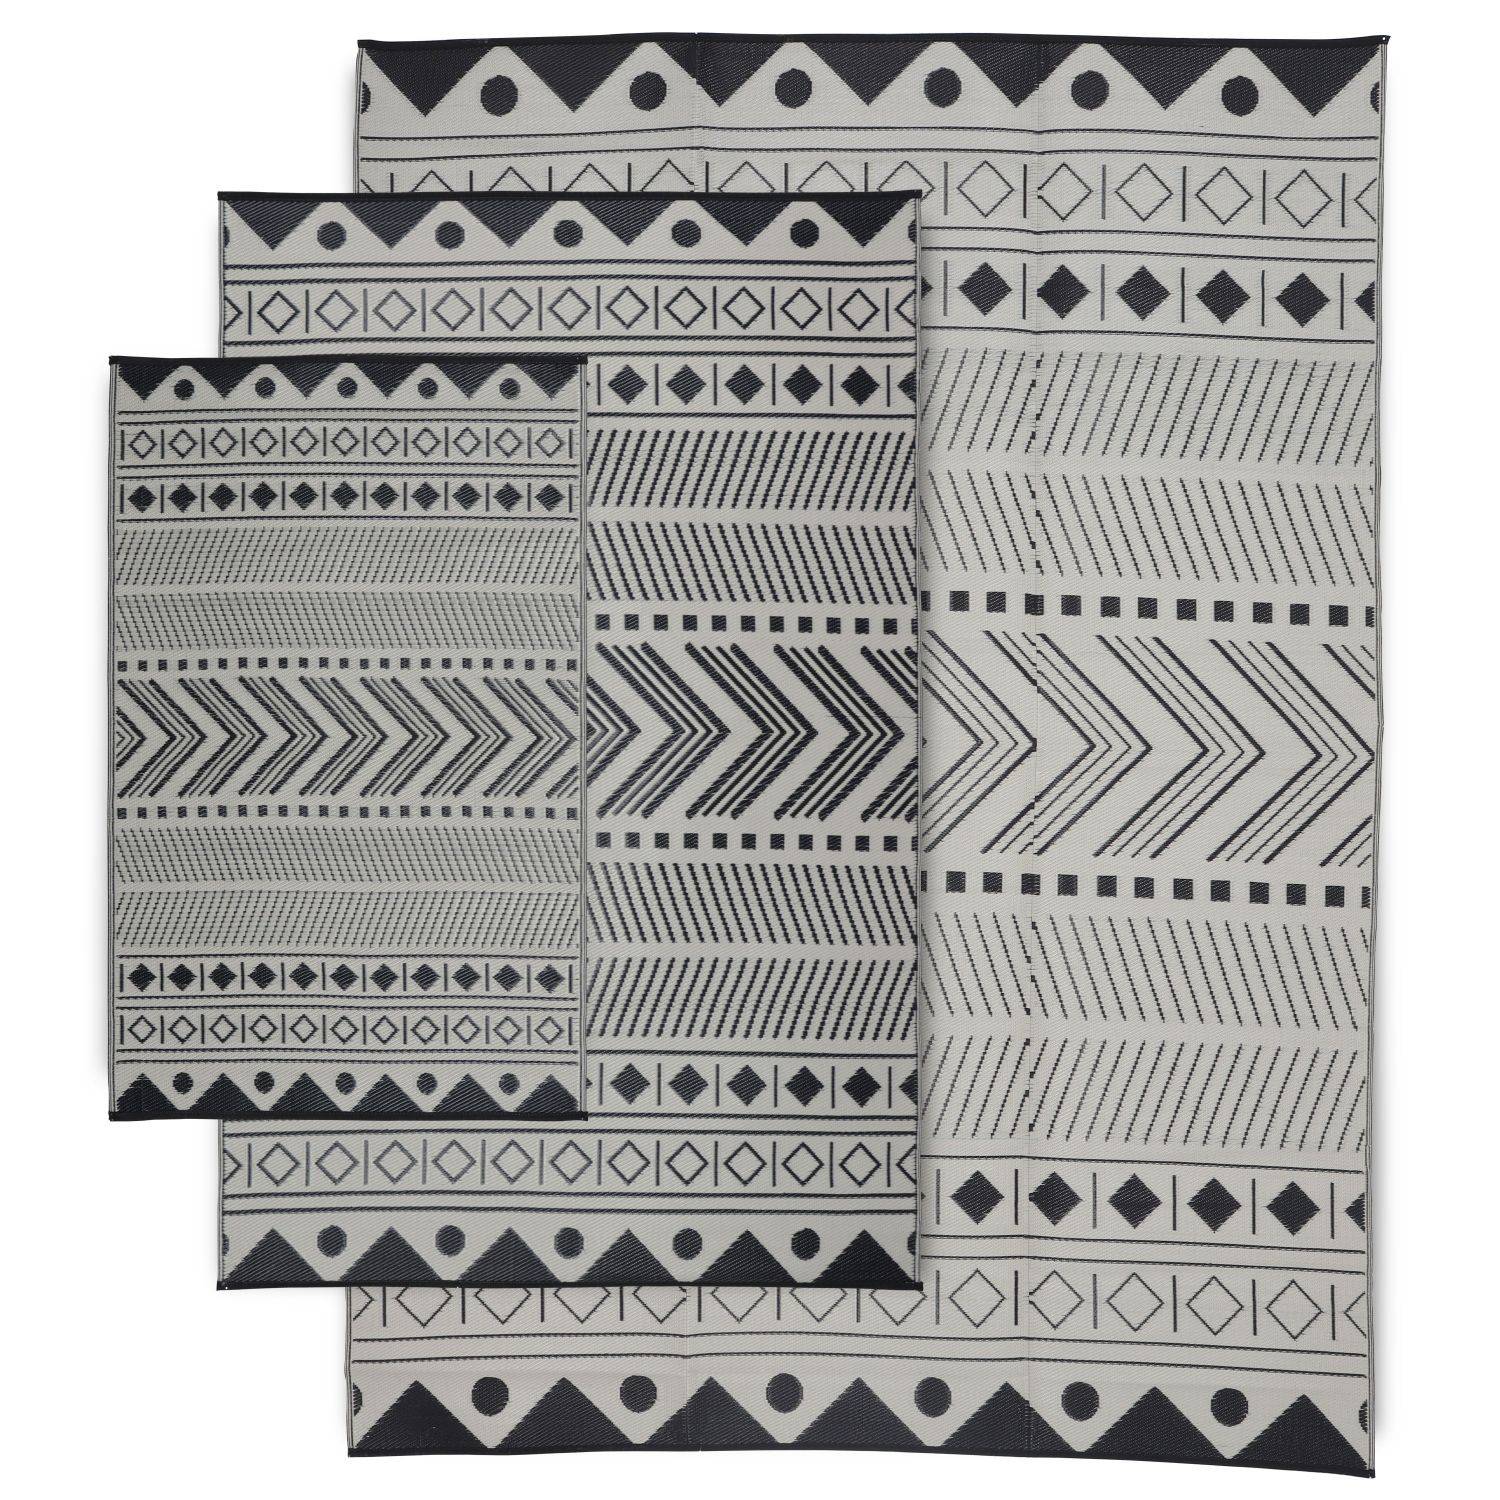 Tapis d’extérieur 270x360cm BAMAKO- Rectangulaire, motif ethnique noir / beige, jacquard, réversible, indoor / outdoor, Photo5